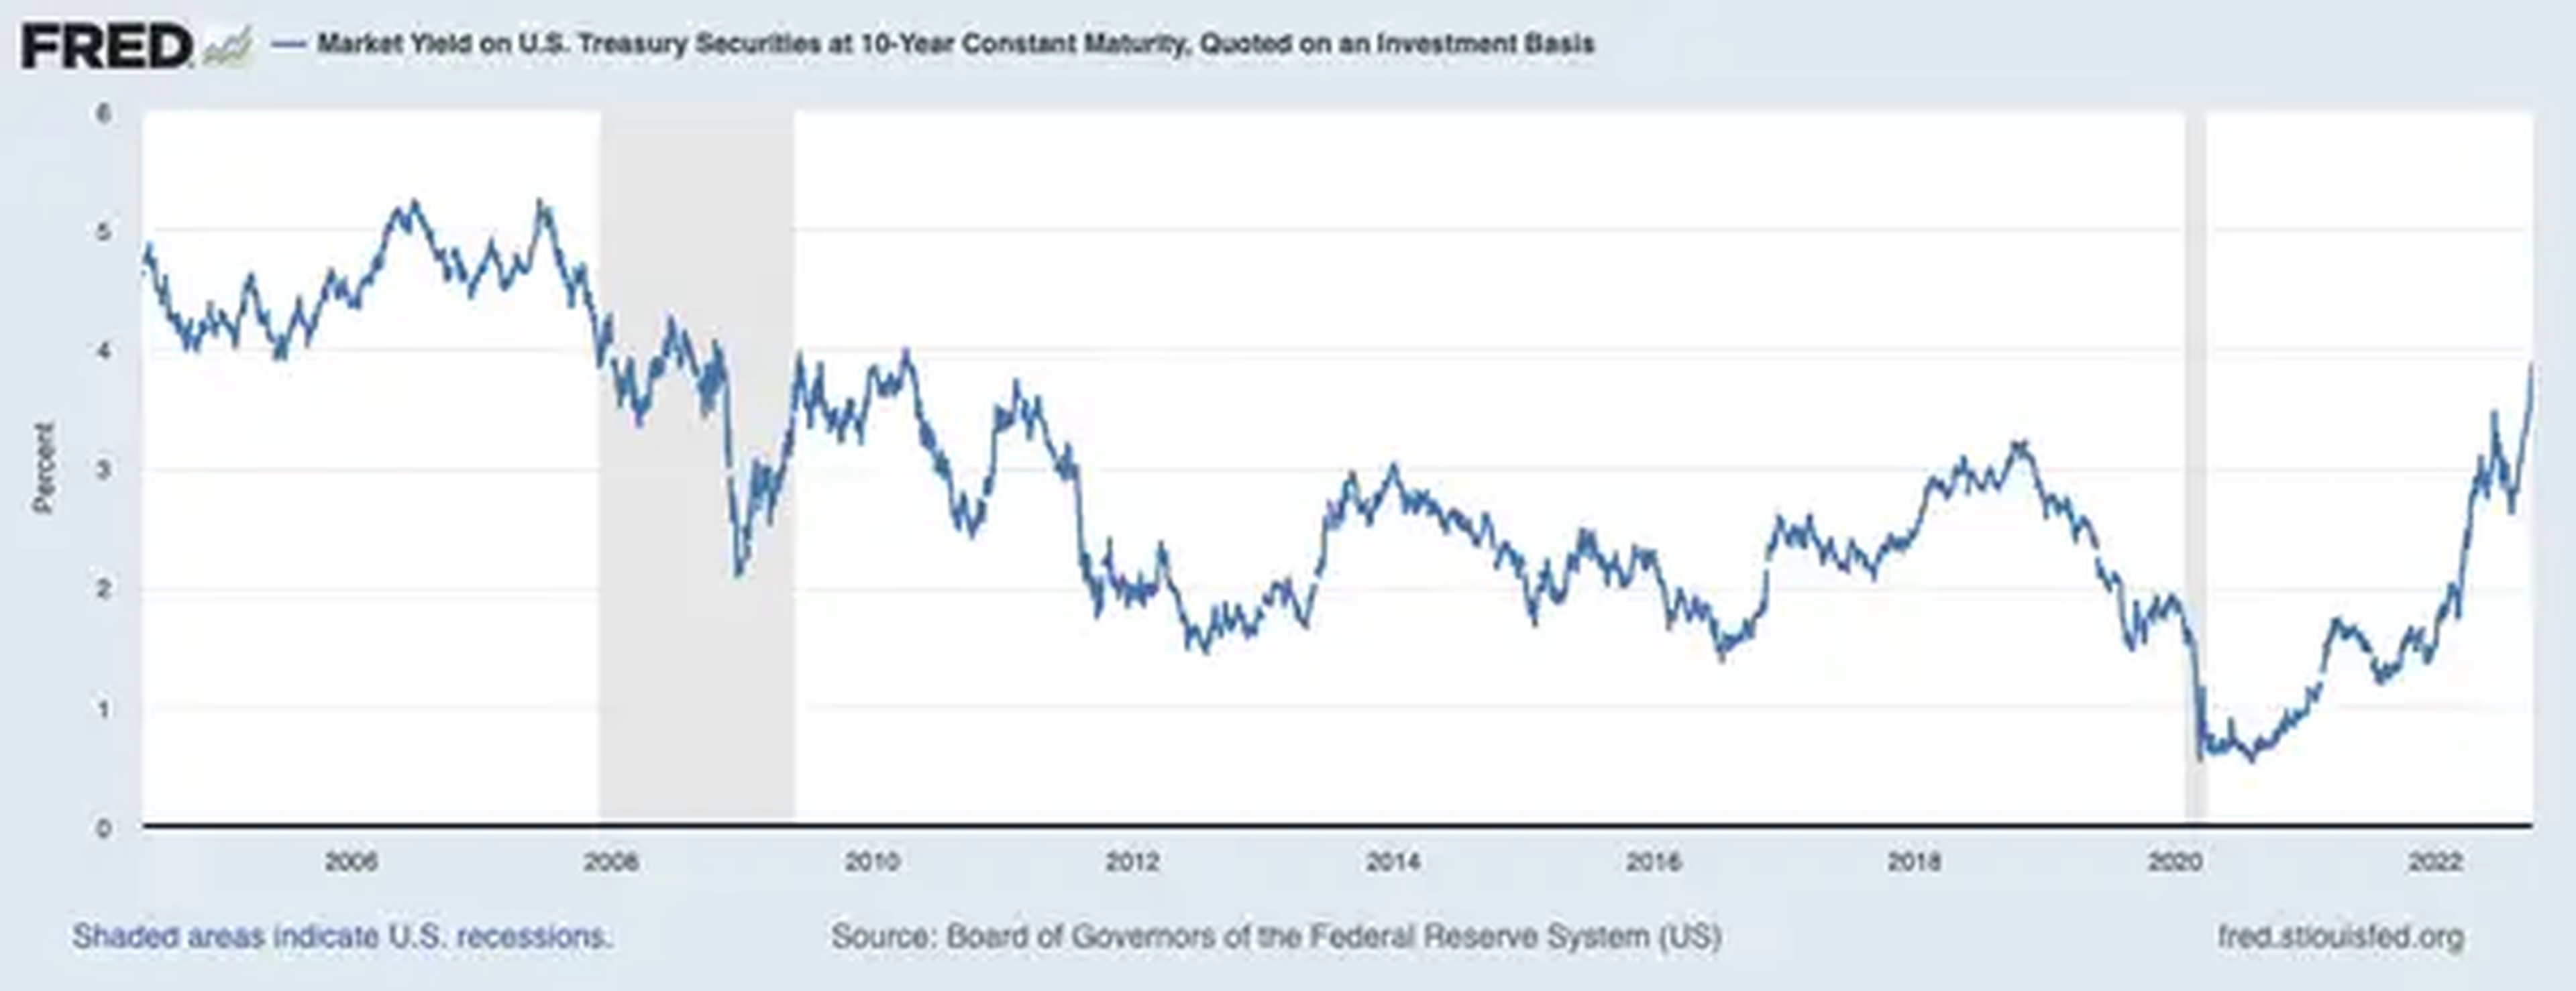 Los rendimientos de los bonos del Tesoro a 10 años se acercan al 4% por primera vez desde 2010.